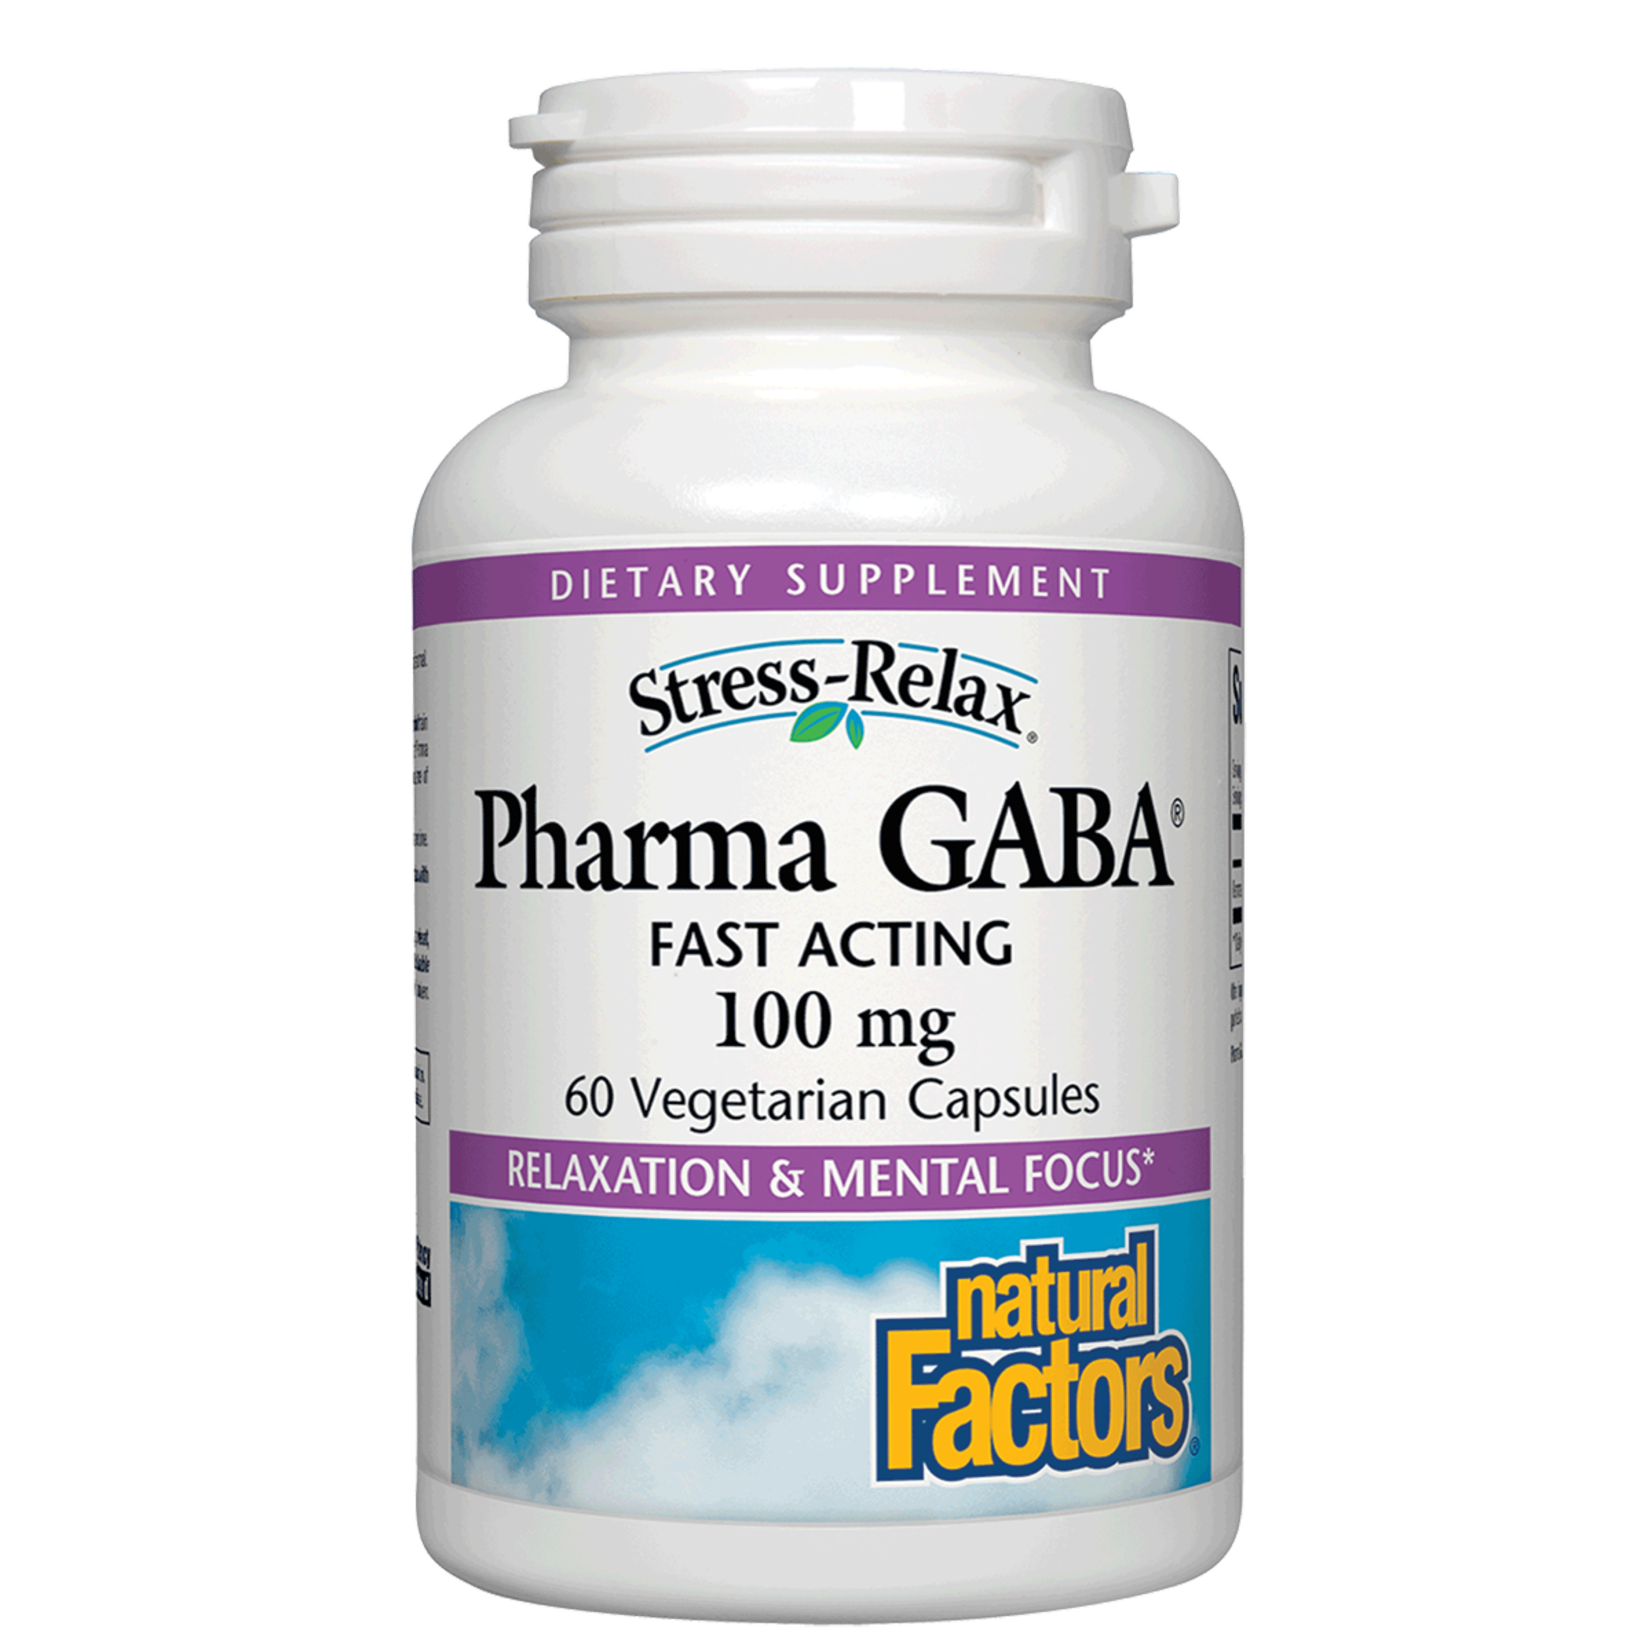 Natural Factors Natural Factors - Stress-Relax Pharma Gaba - 60 Capsules